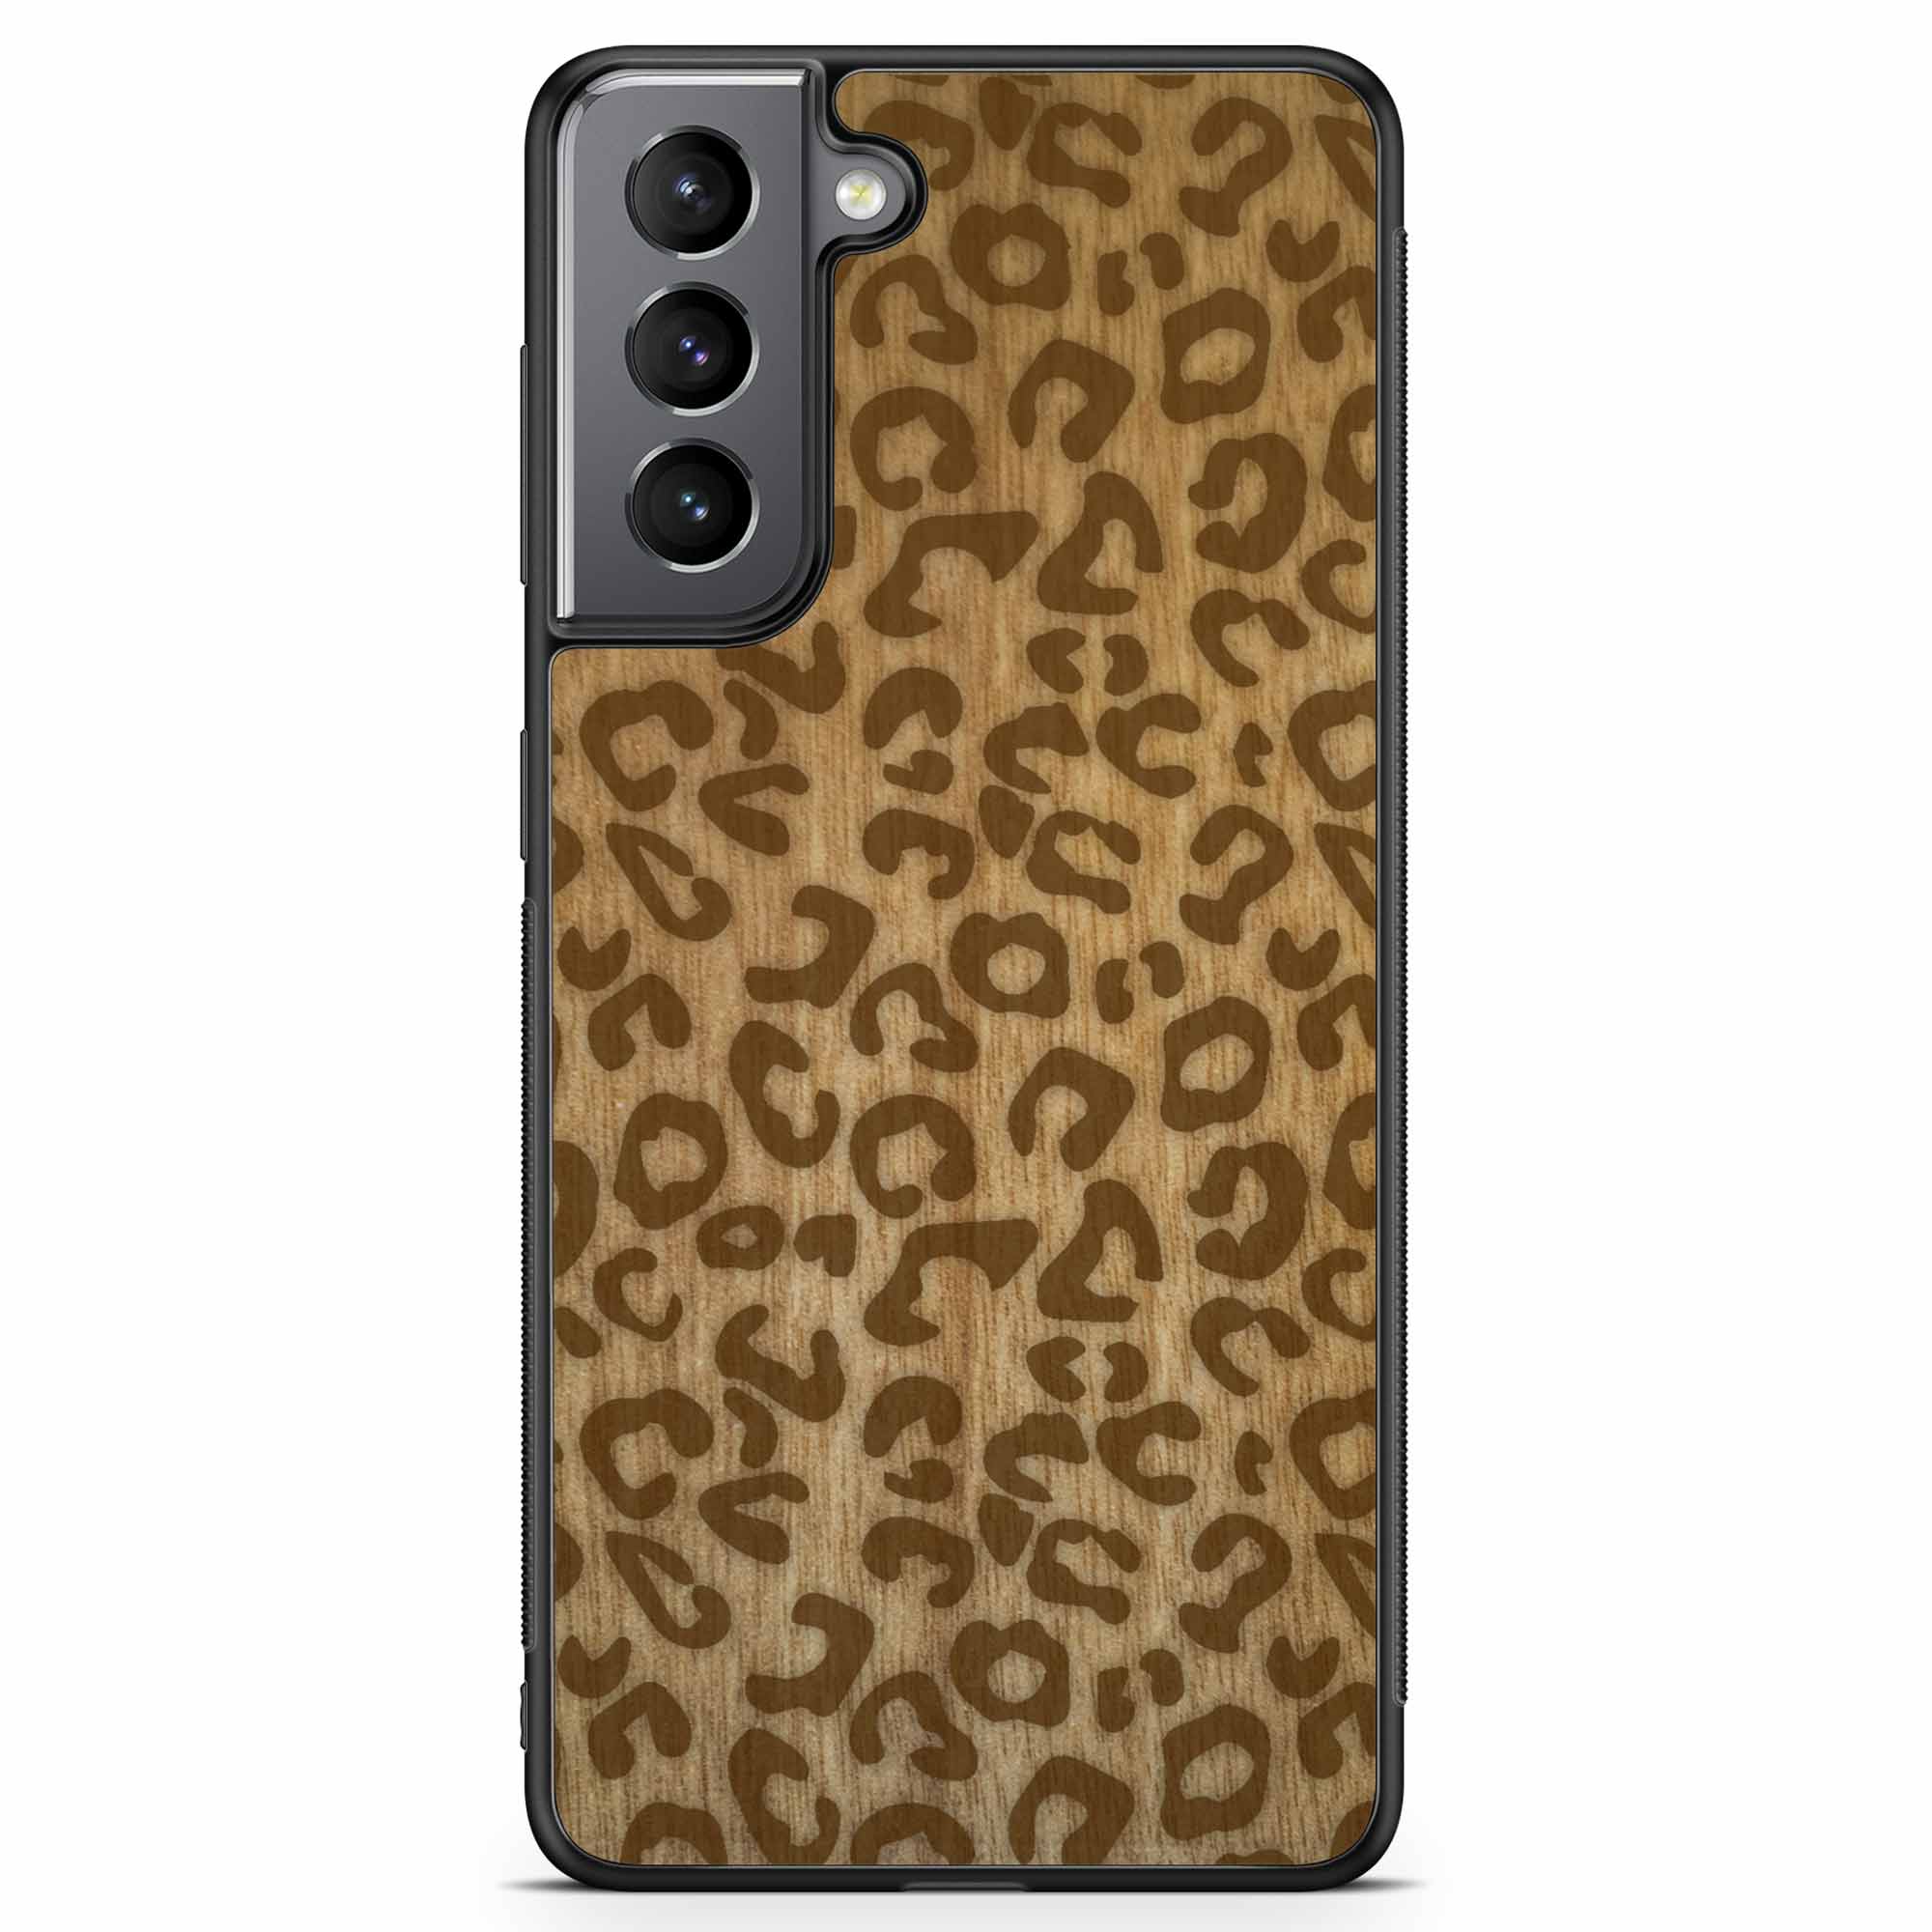 Funda de madera para teléfono Samsung S21 con estampado de guepardo